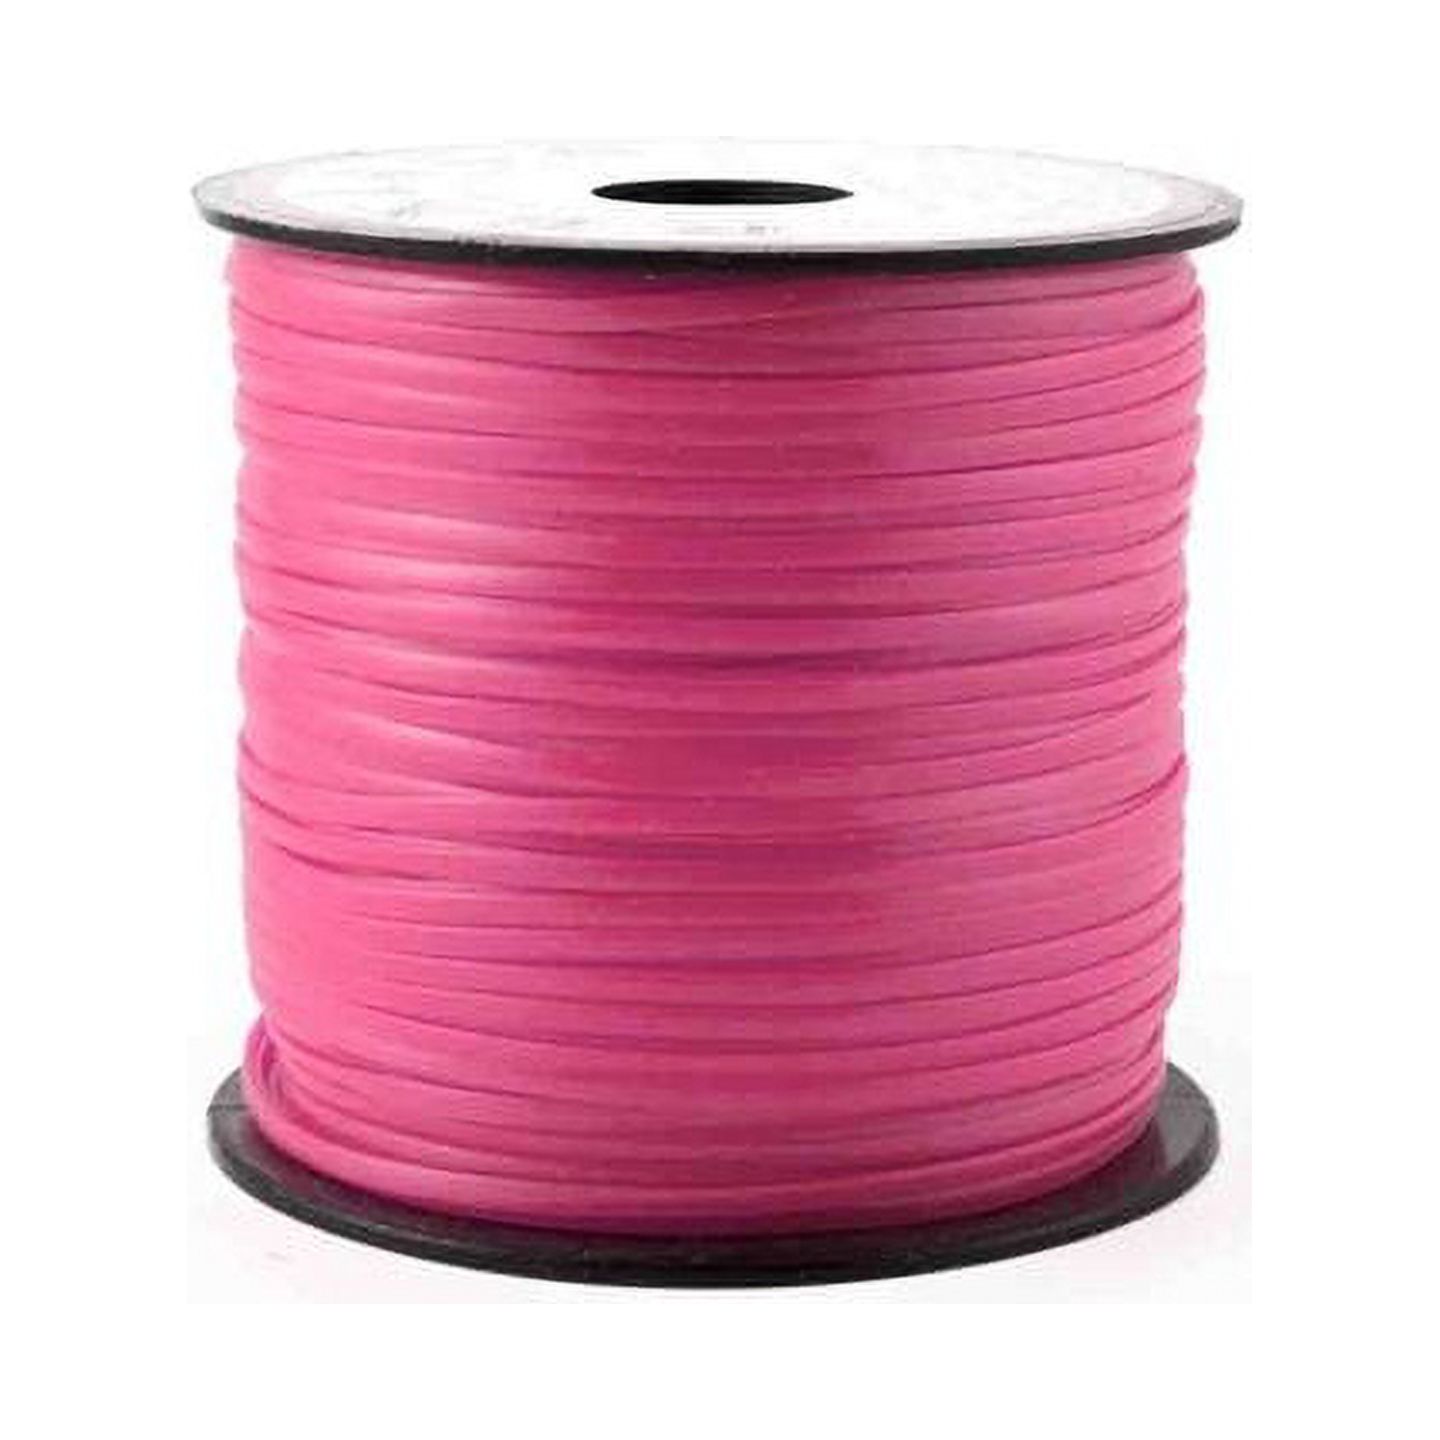 Neon Pink Plastic Craft Lace Lanyard Gimp String Bulk 100 Yard